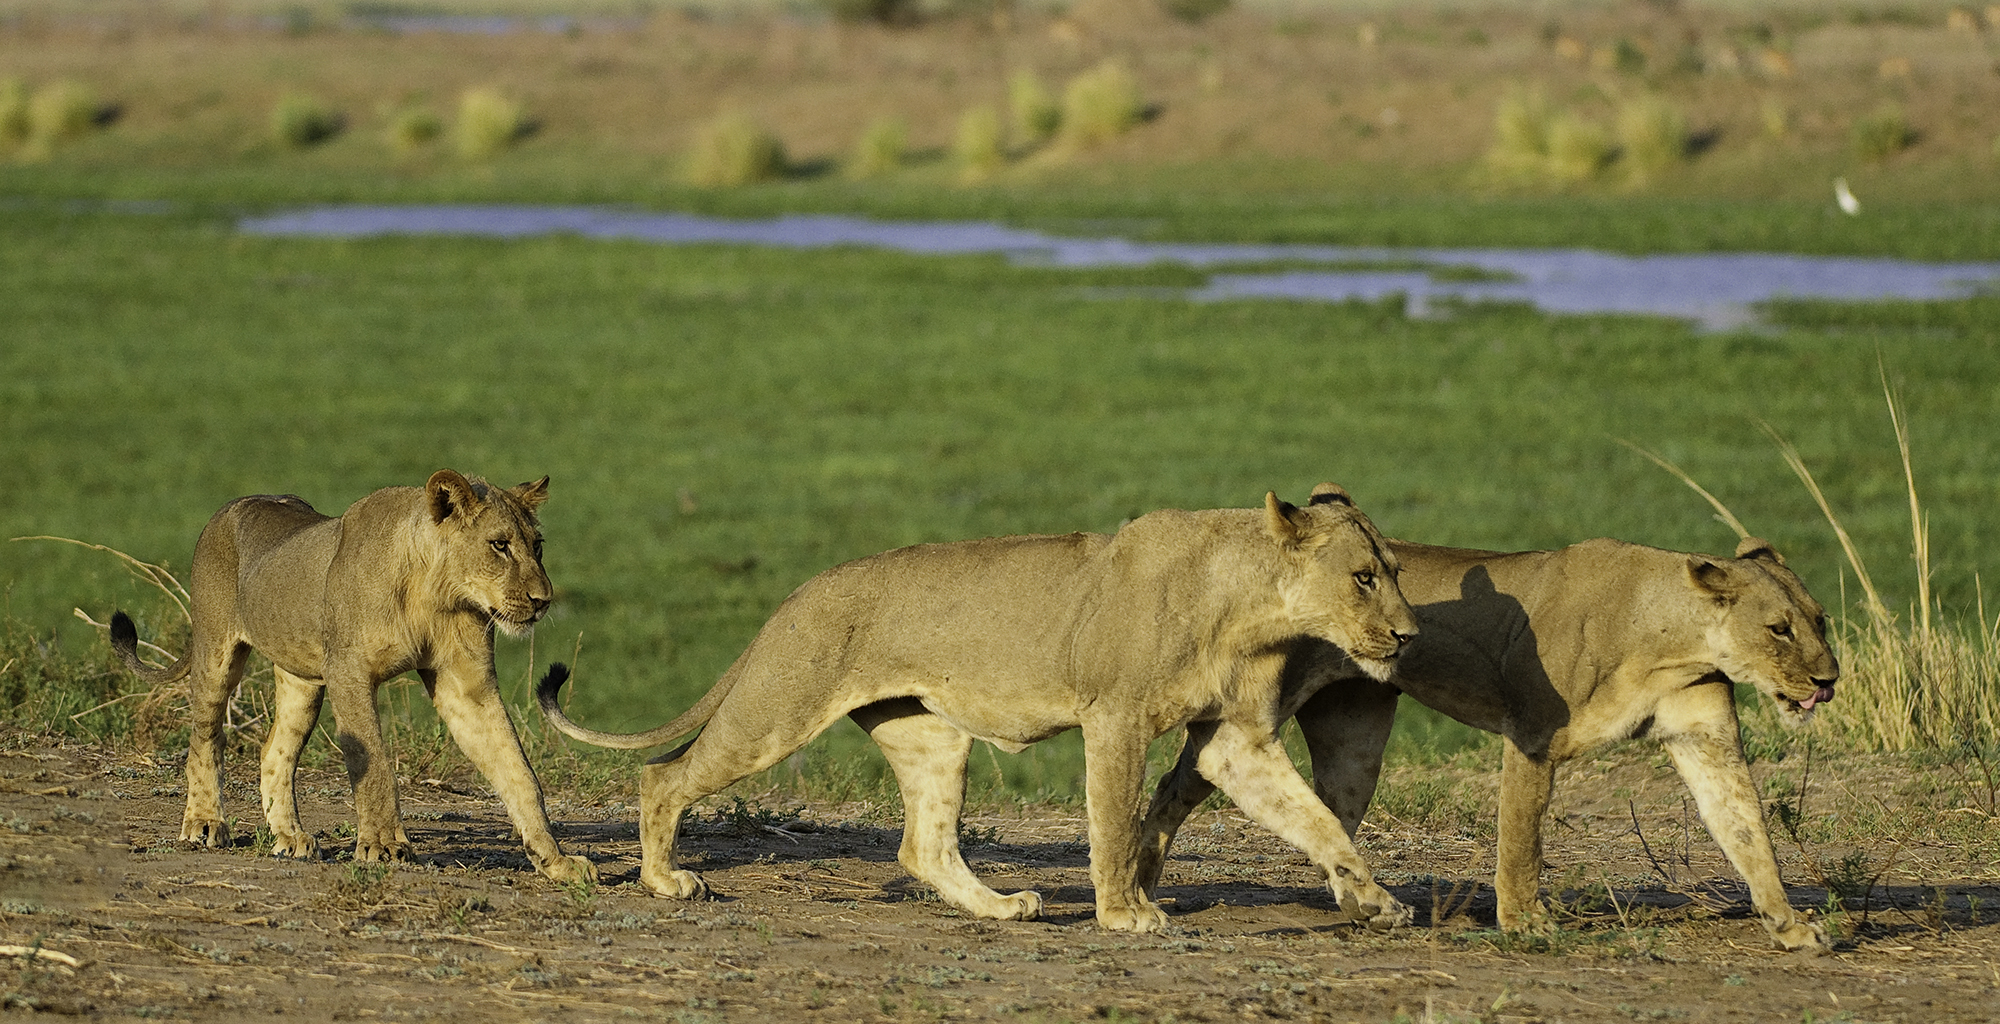 Zimbabwe-Ruckomechi-Wildlife-Lion